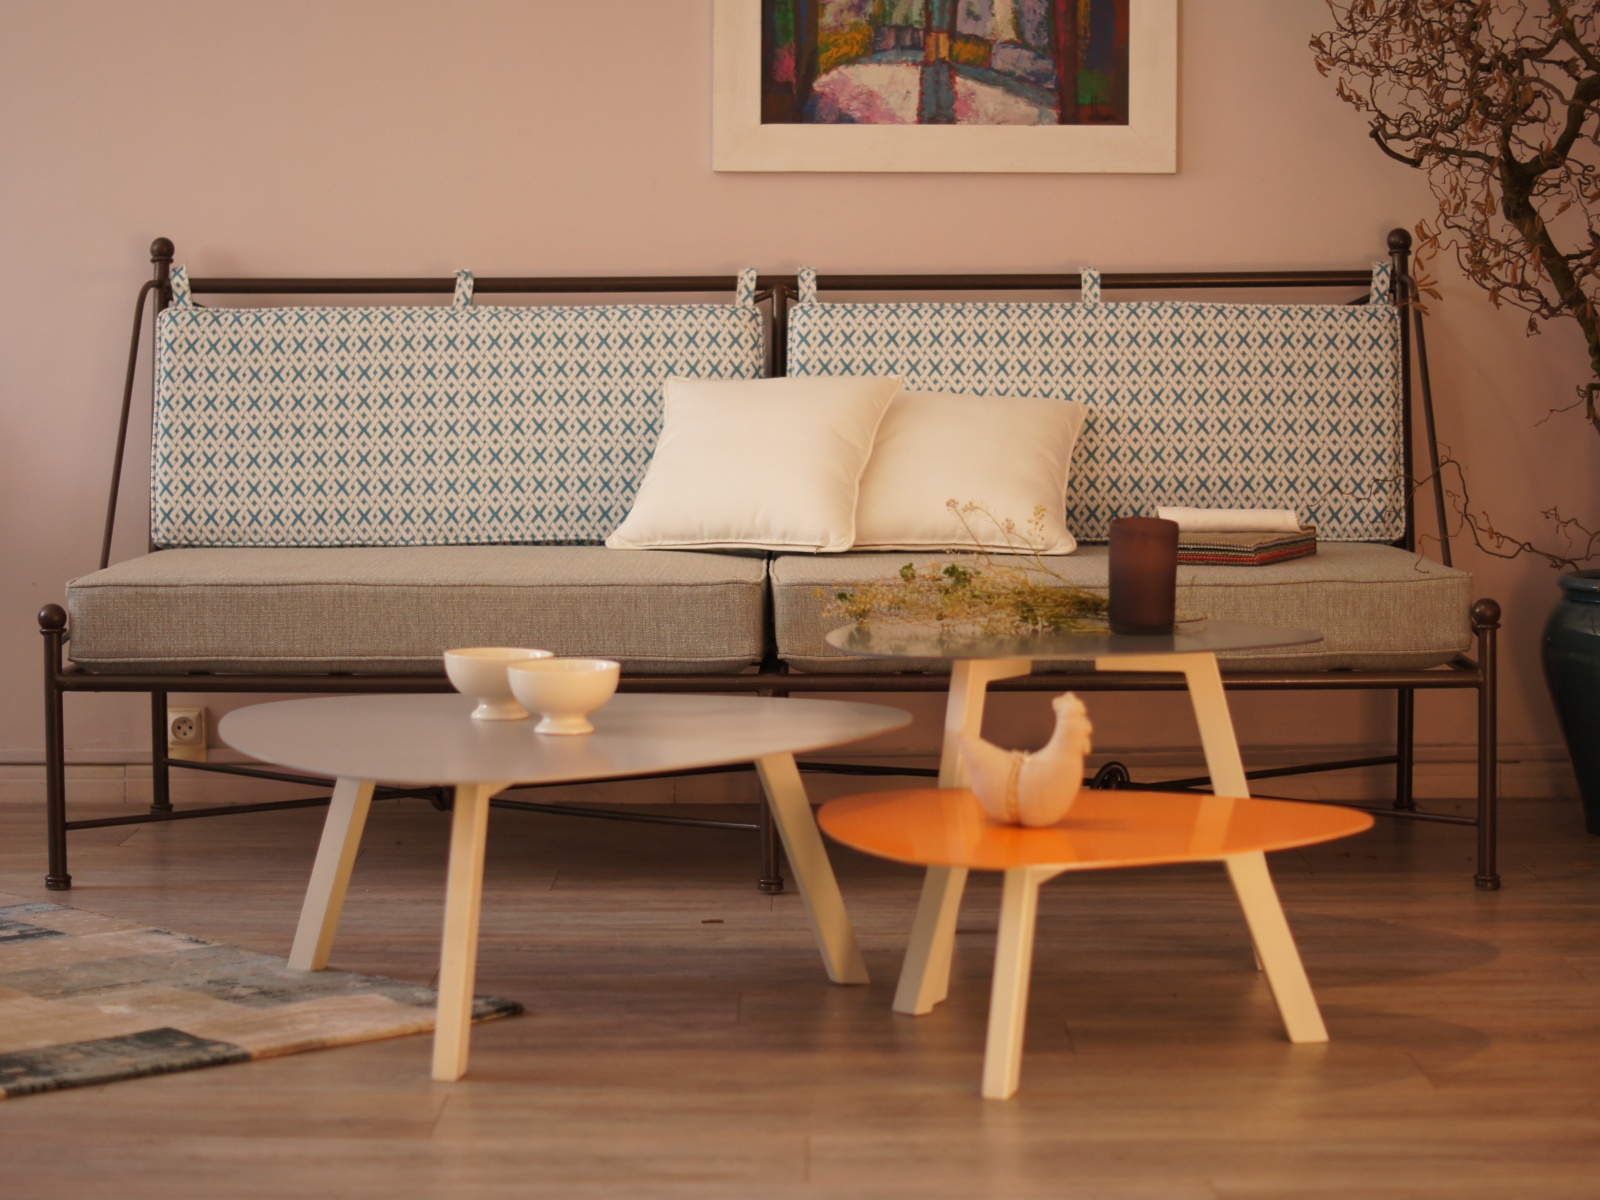 Canapé en fer forgé de style provençal avec table basse